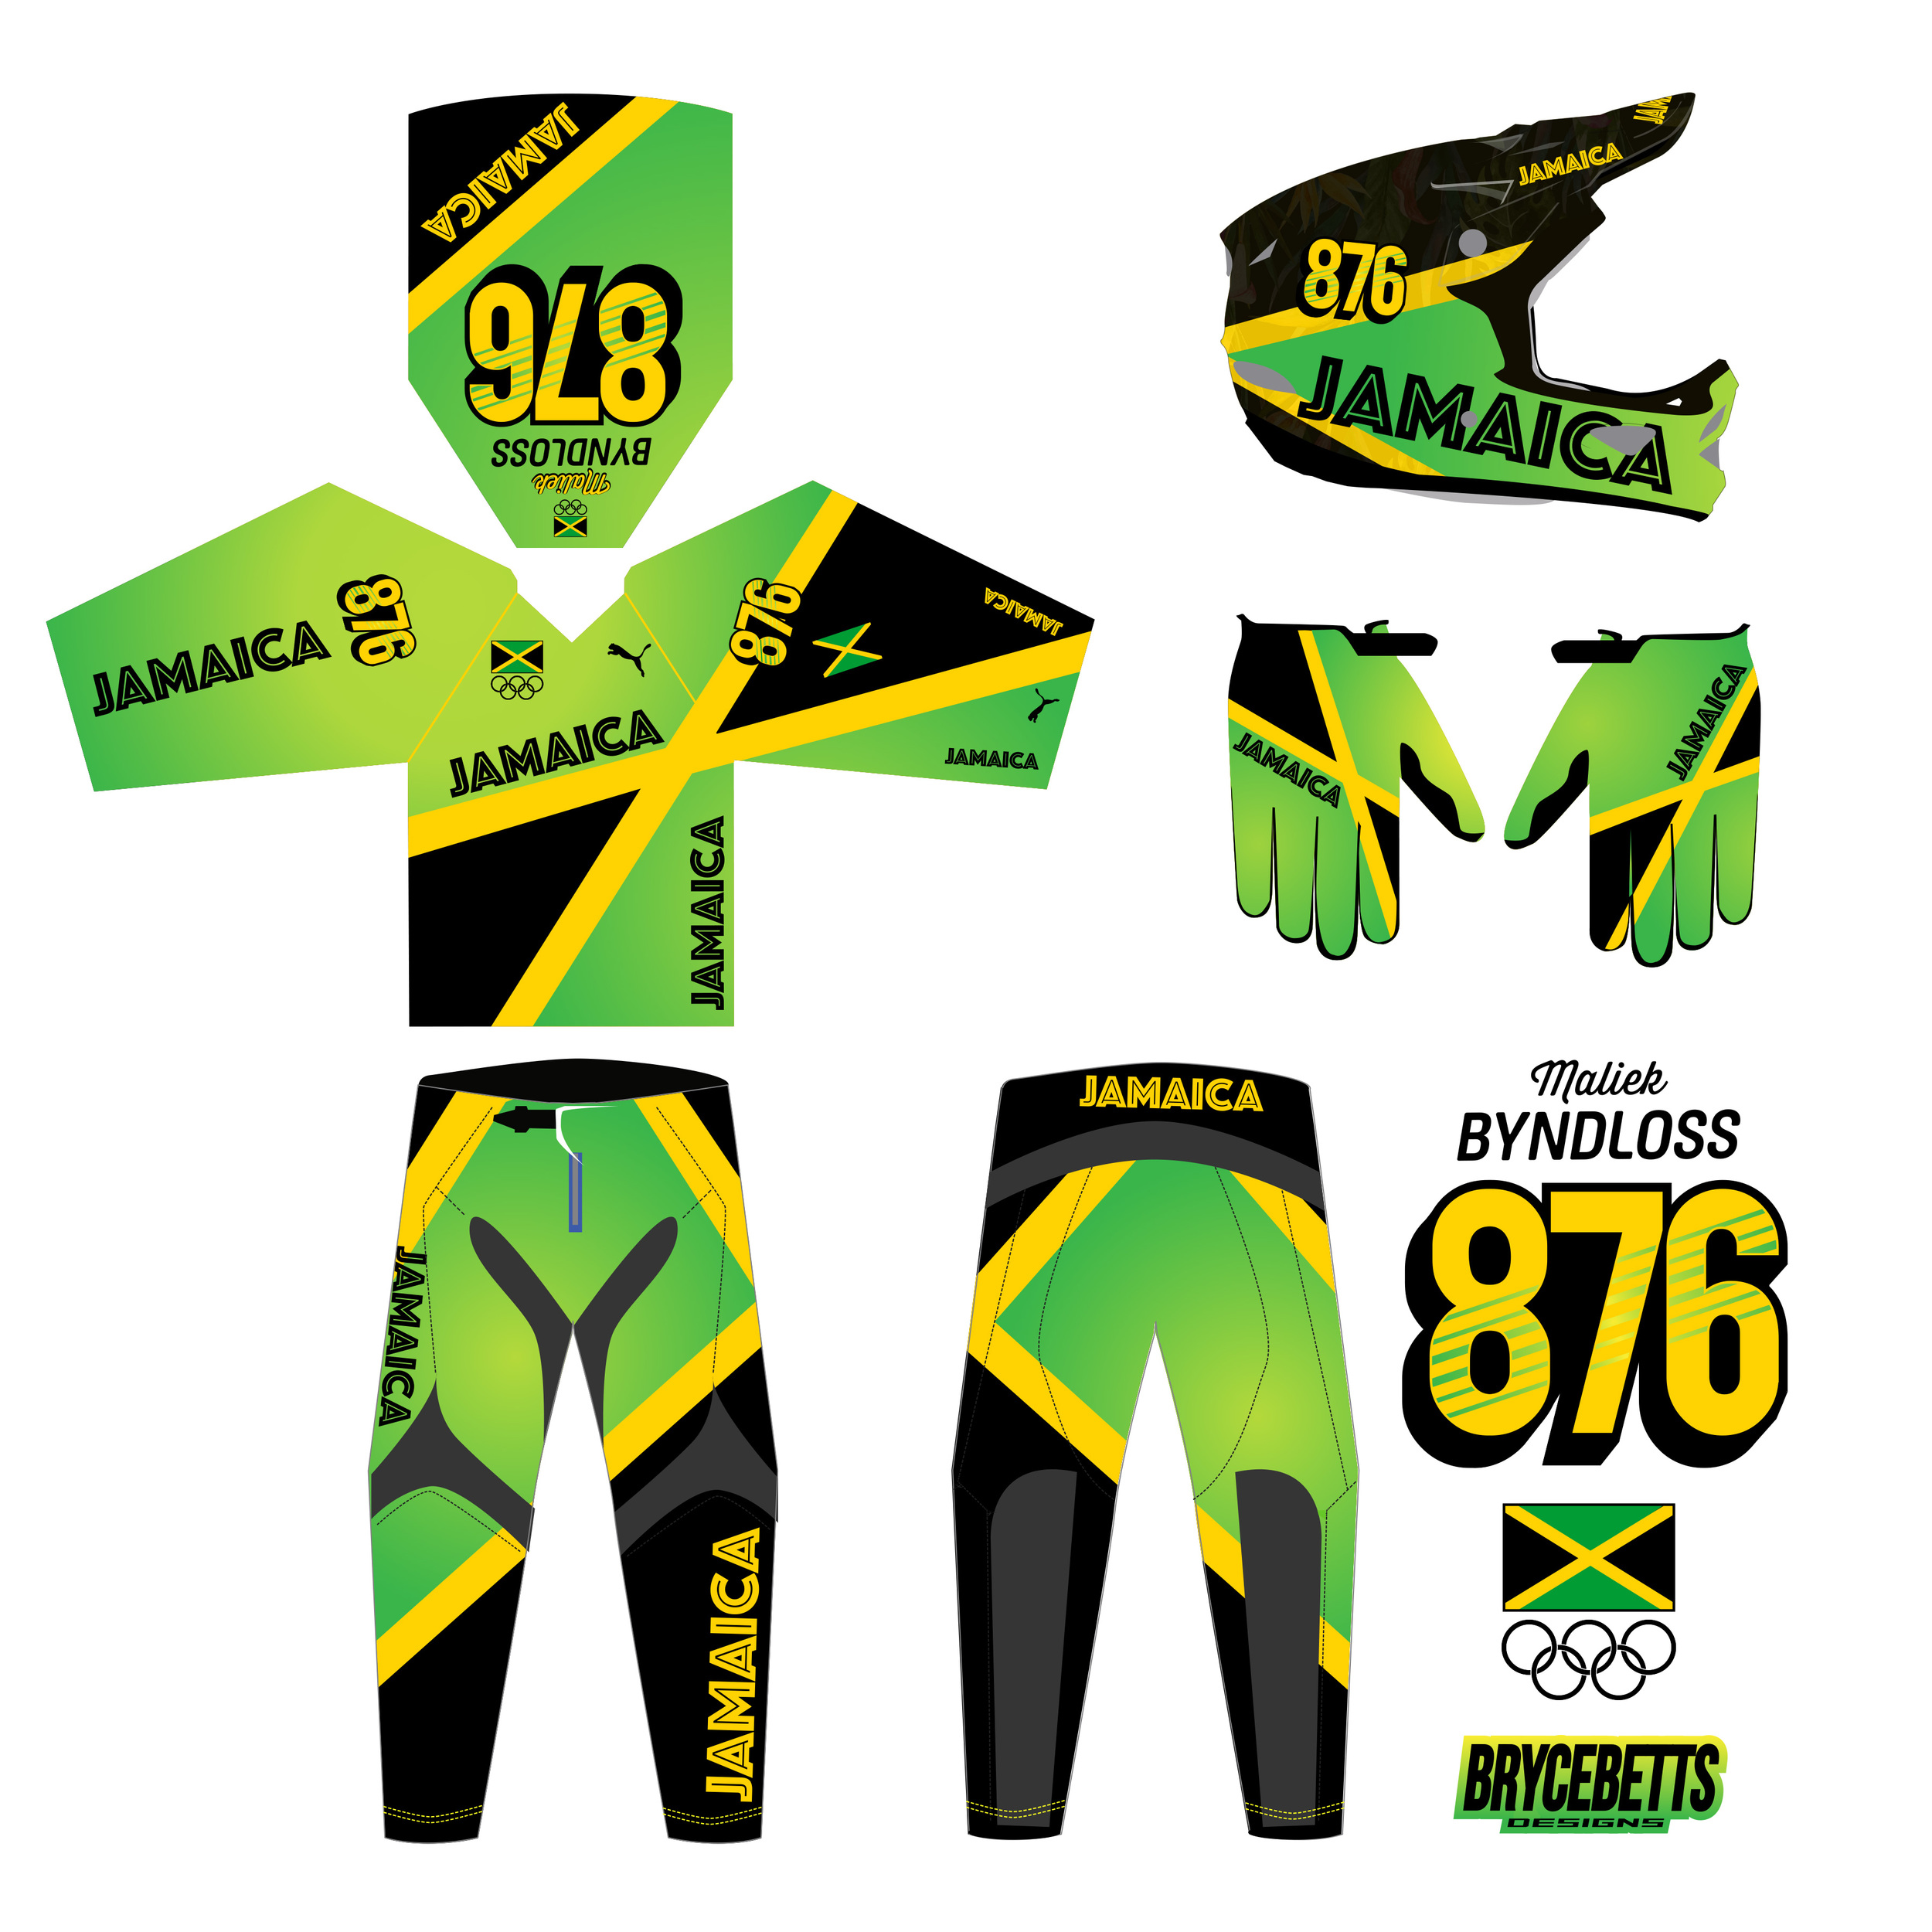 Jamaica BMX Racing Olympic Gear Design